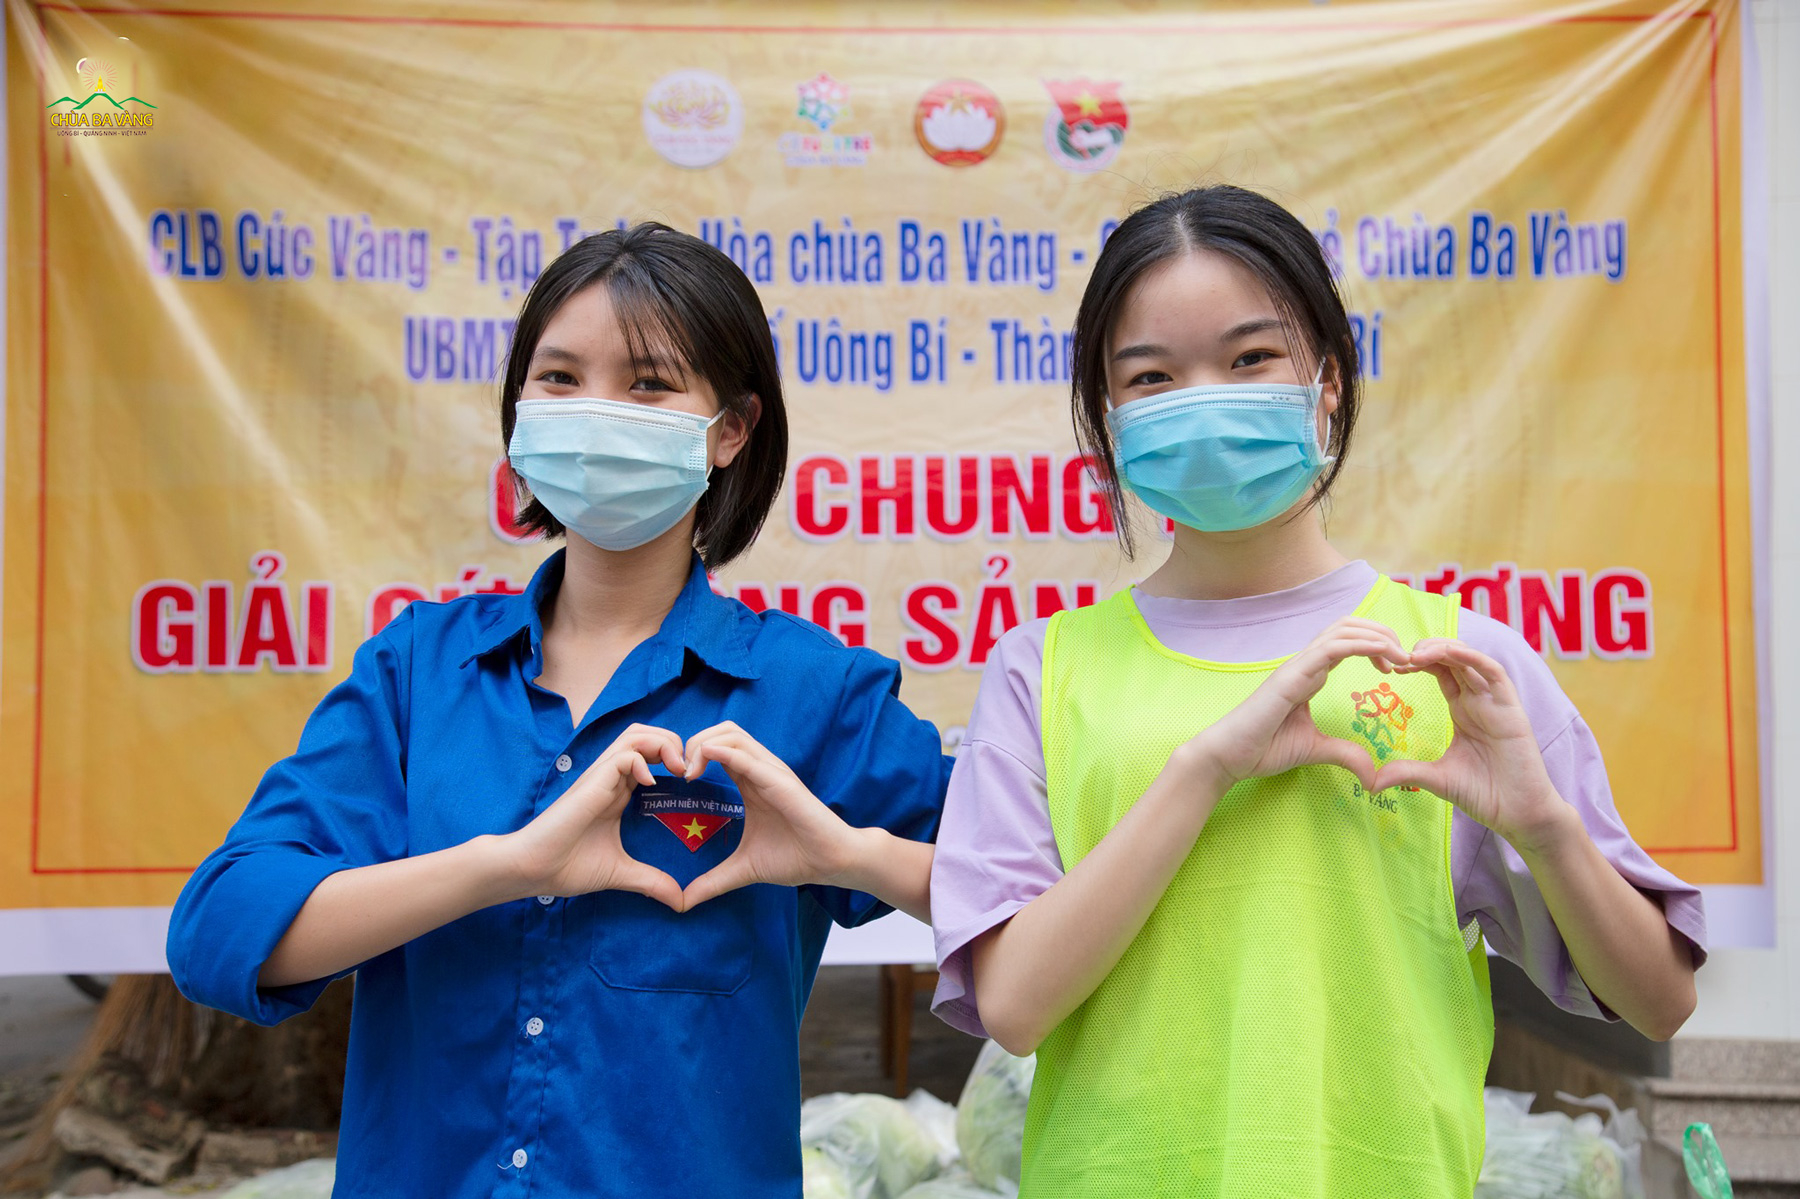 Mong rằng sự kết hợp giữa CLB Tuổi trẻ Ba Vàng và Thành Đoàn Uông Bí sẽ góp phần lan tỏa tinh thần tuổi trẻ tỉnh Quảng Ninh nói riêng và tất cả thế hệ trẻ nói chung trong hoạt động vì cộng đồng